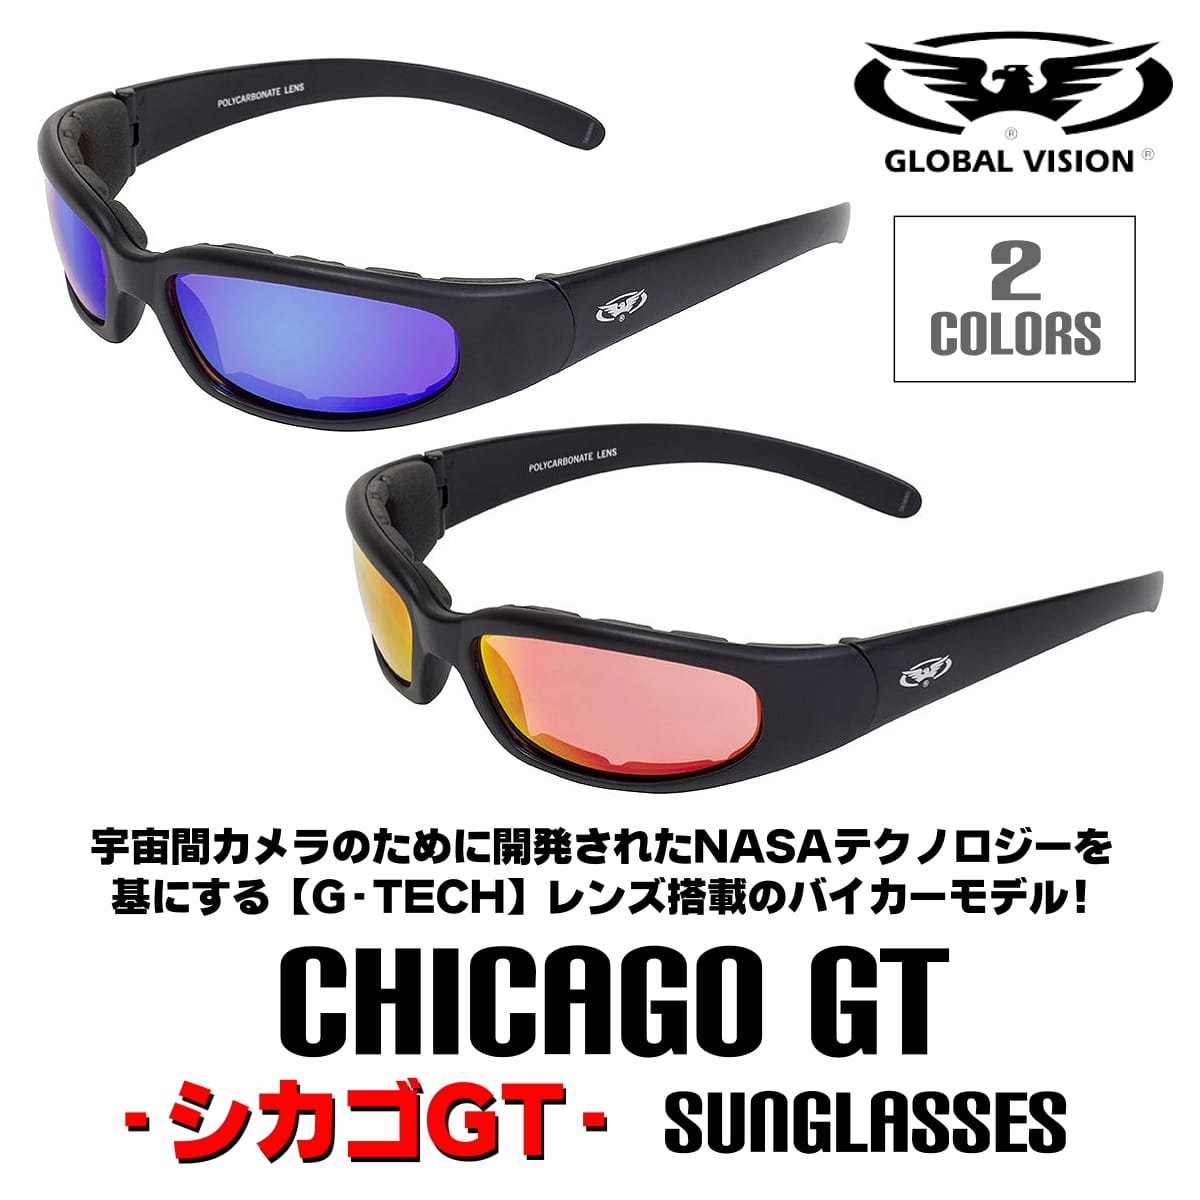 GLOBAL VISION Chicago GT サングラス Motorcycle Sunglasses 全2色! グローバルビジョン G-Tech シカゴ GT サングラス! マットブラックフレーム UV400 飛散防止加工 耐擦傷 ジーテック マルチレイヤードチタン加工レンズ ブルー レッド バイクに!